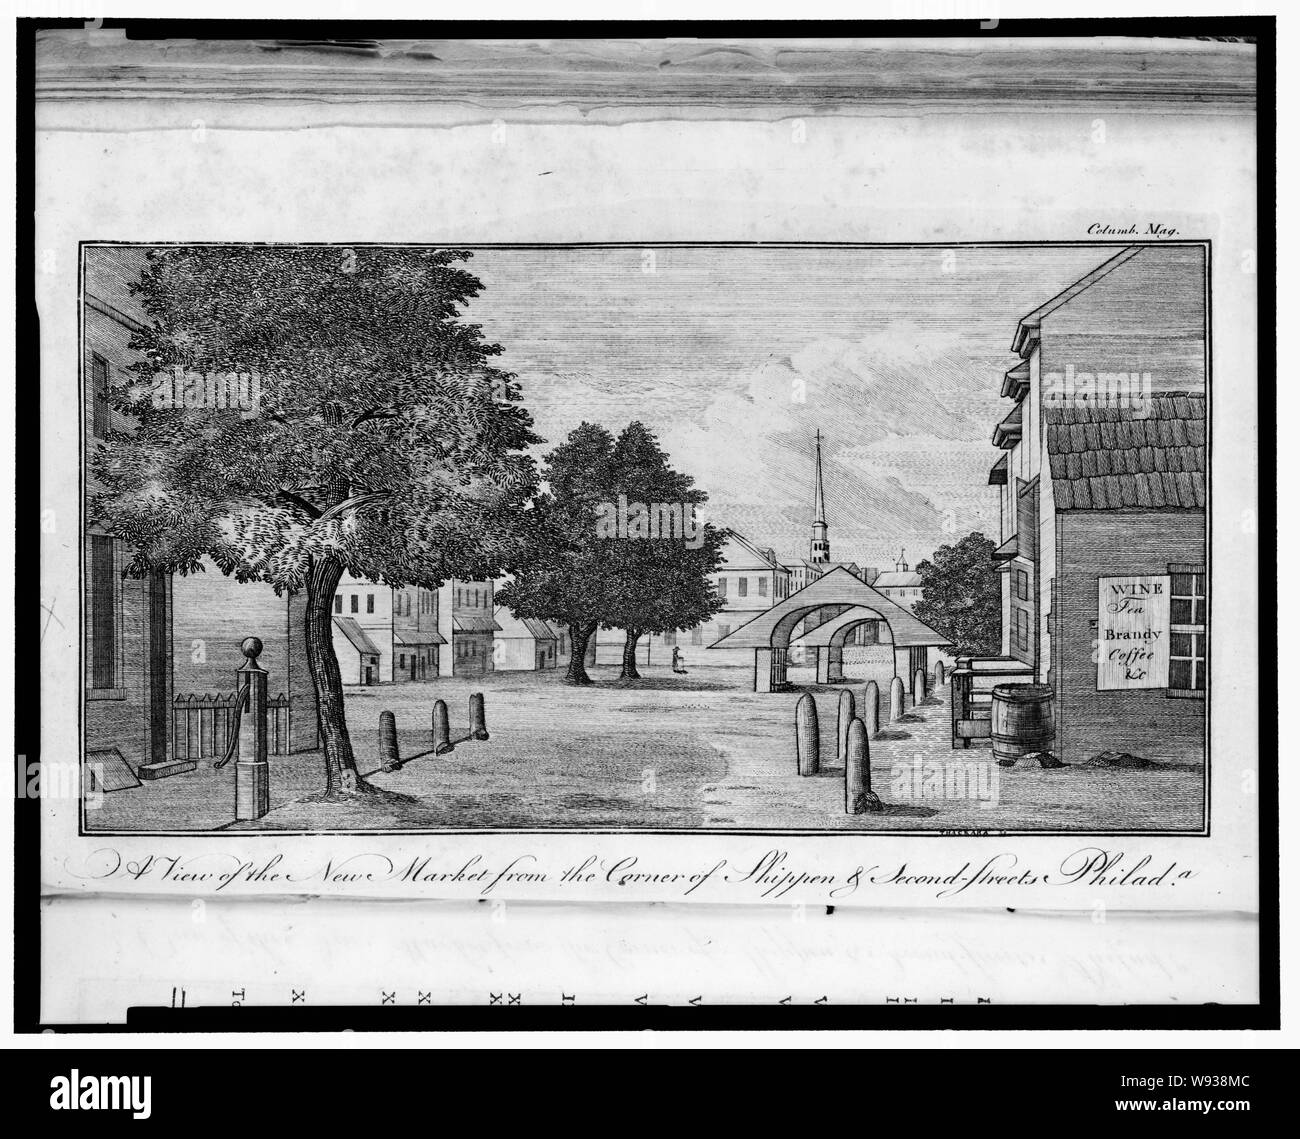 Una vista del nuevo mercado de la esquina de la segunda calle Shippen & Philada. 1787 / Thackara sc. Foto de stock